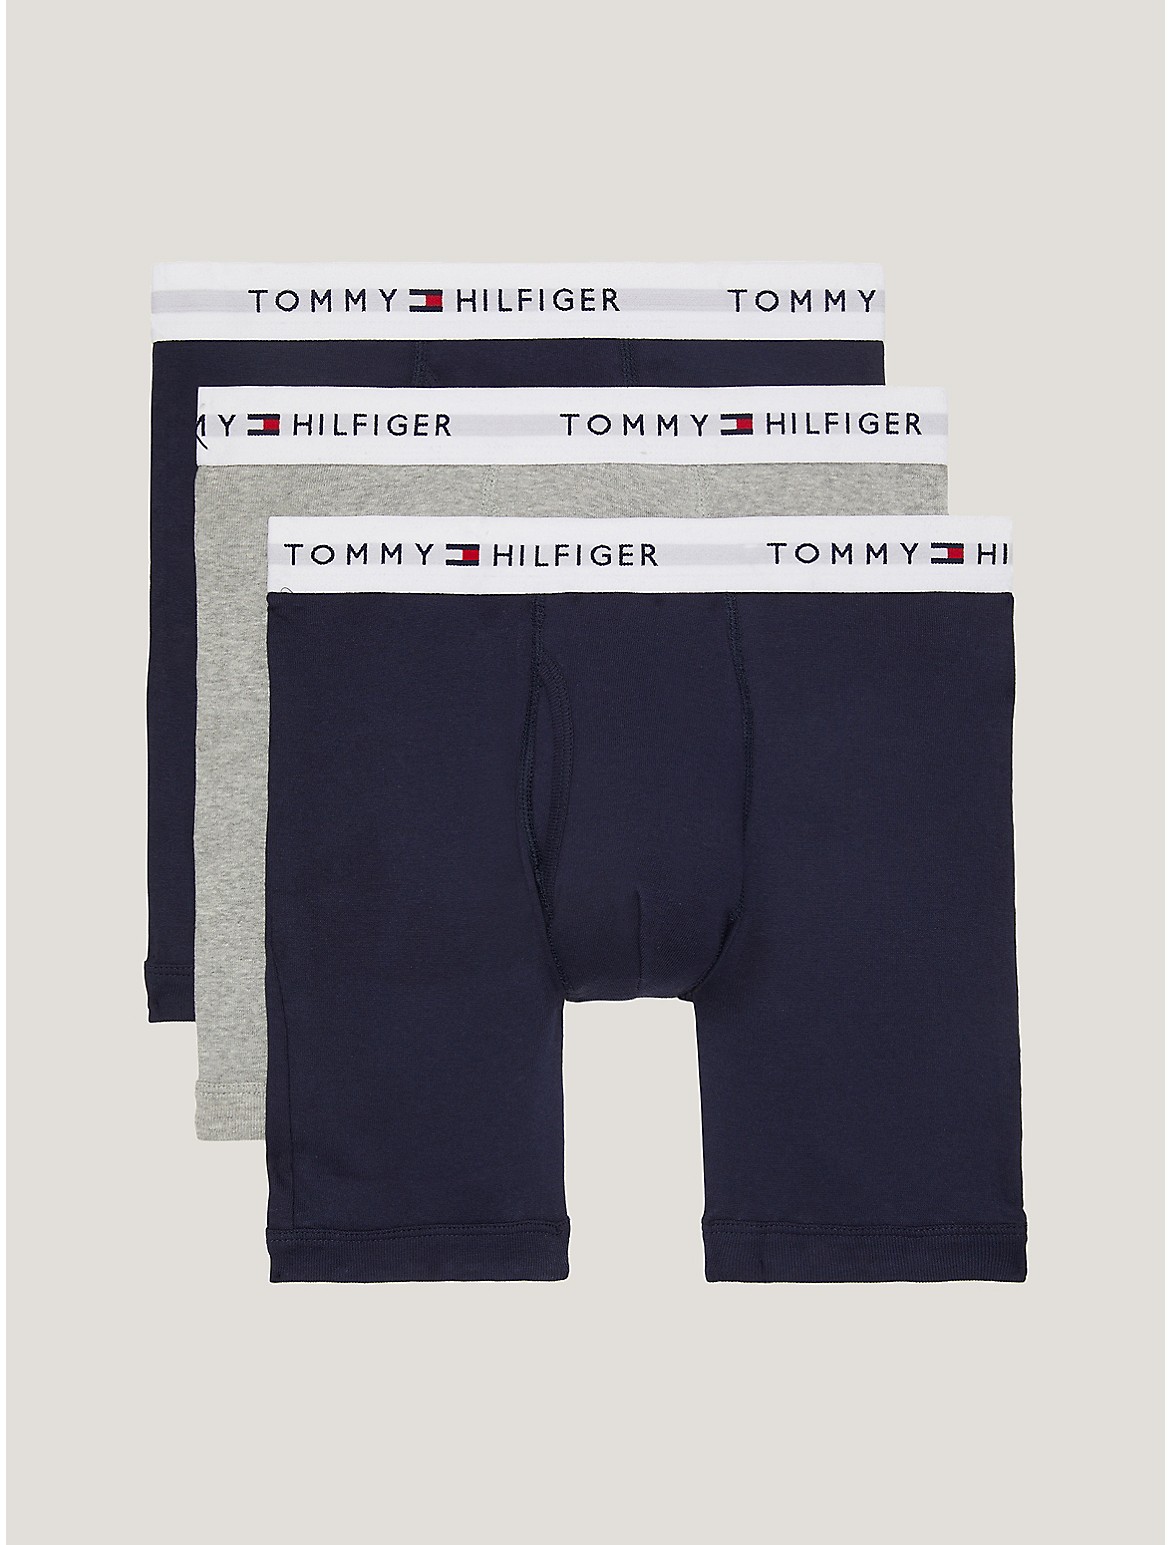 Tommy Hilfiger Men's Cotton Classics Boxer Brief 3-Pack - Blue - S